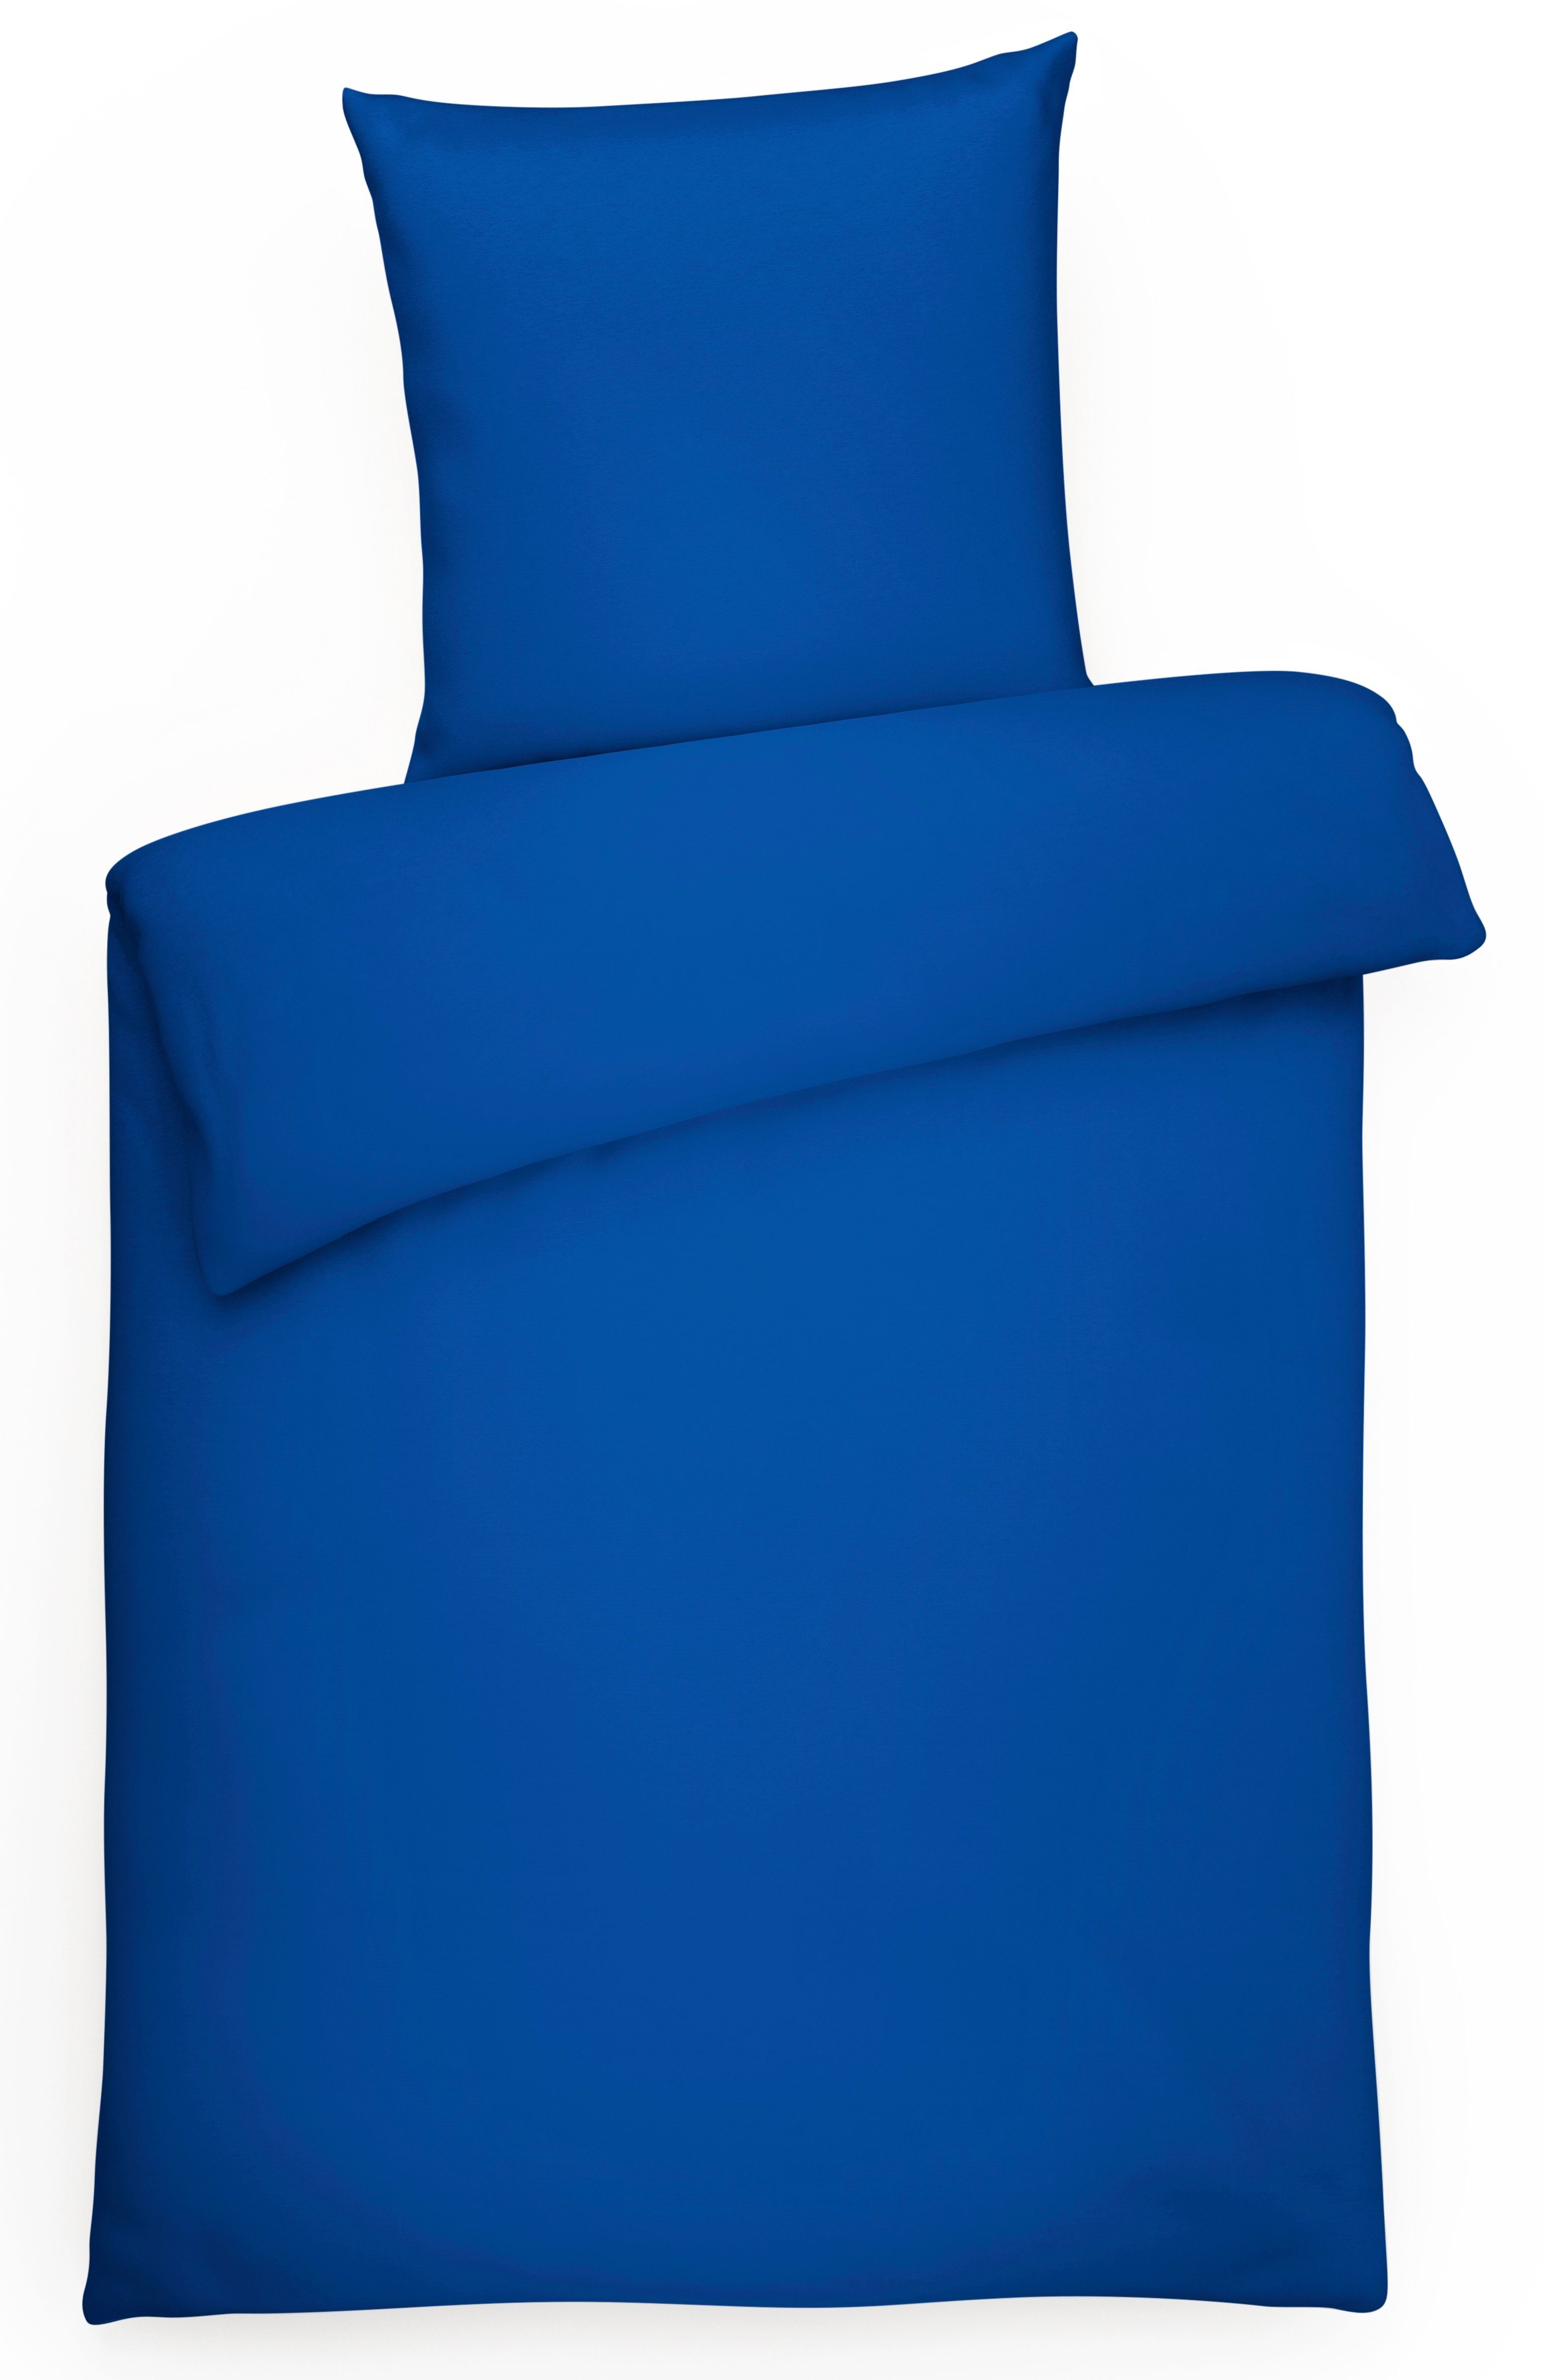 Blaue Bettwäsche online kaufen » Bettbezüge | OTTO